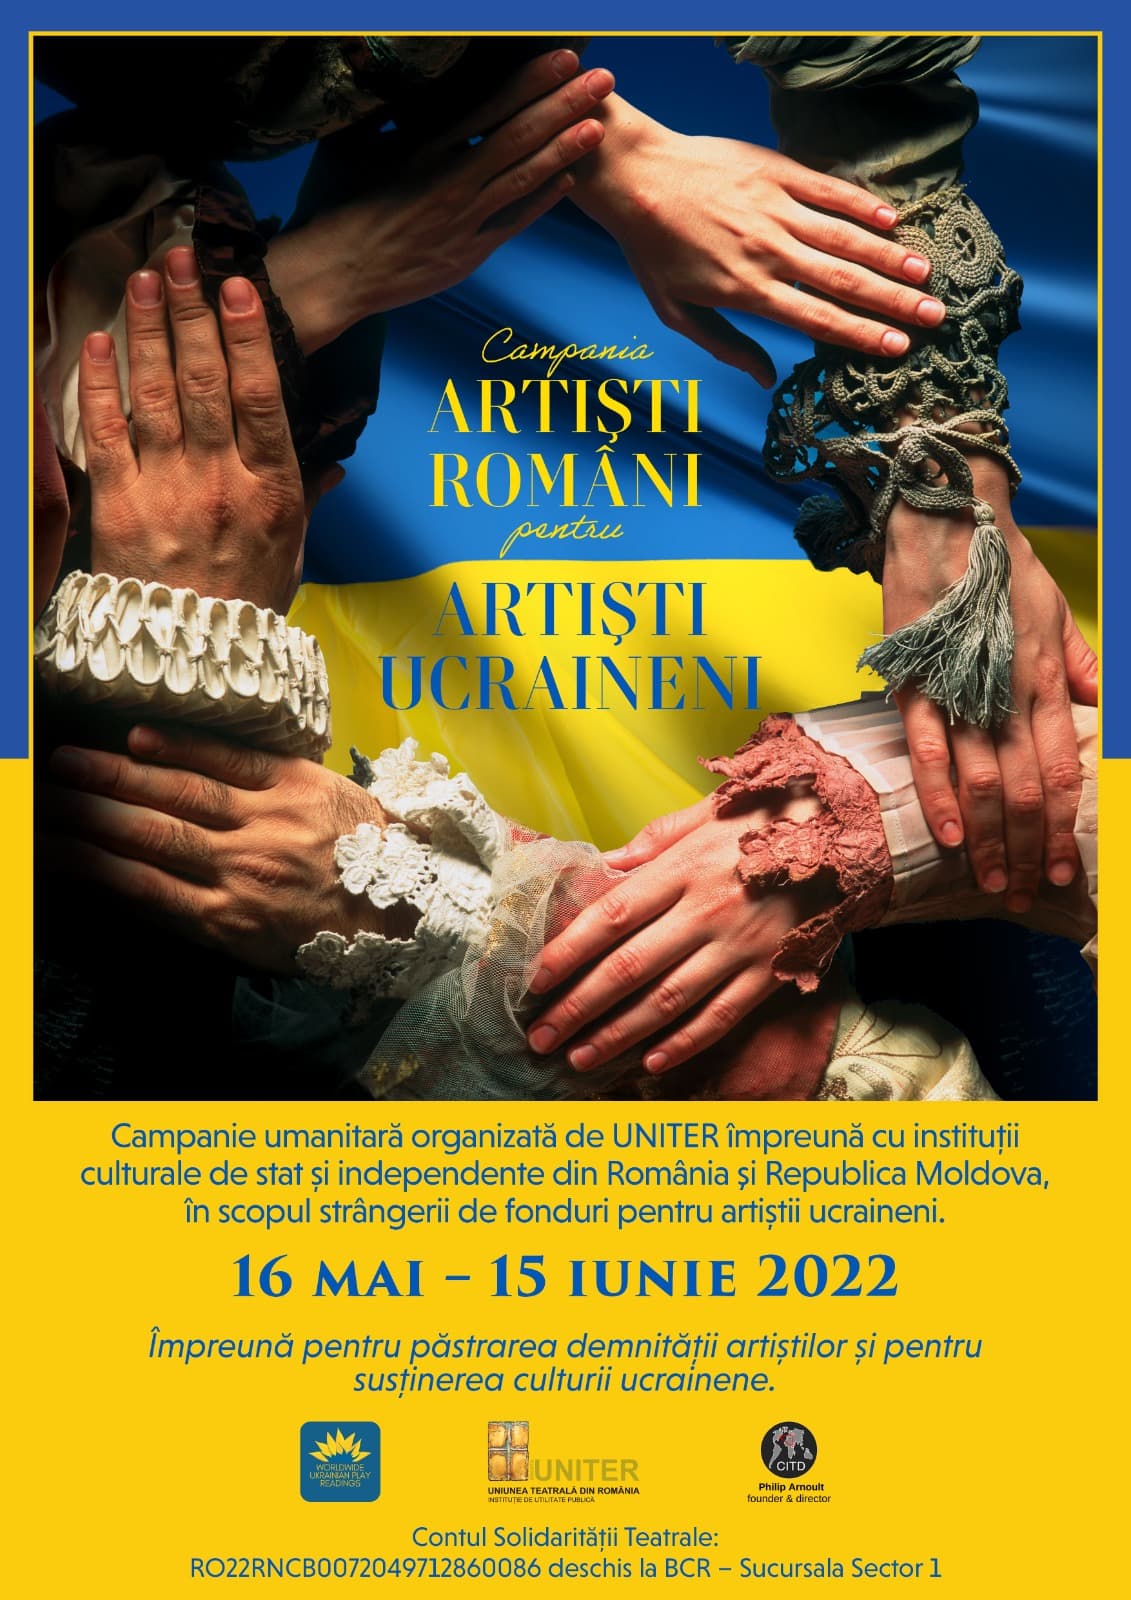 Campania umanitară Artiști români pentru artiști ucraineni